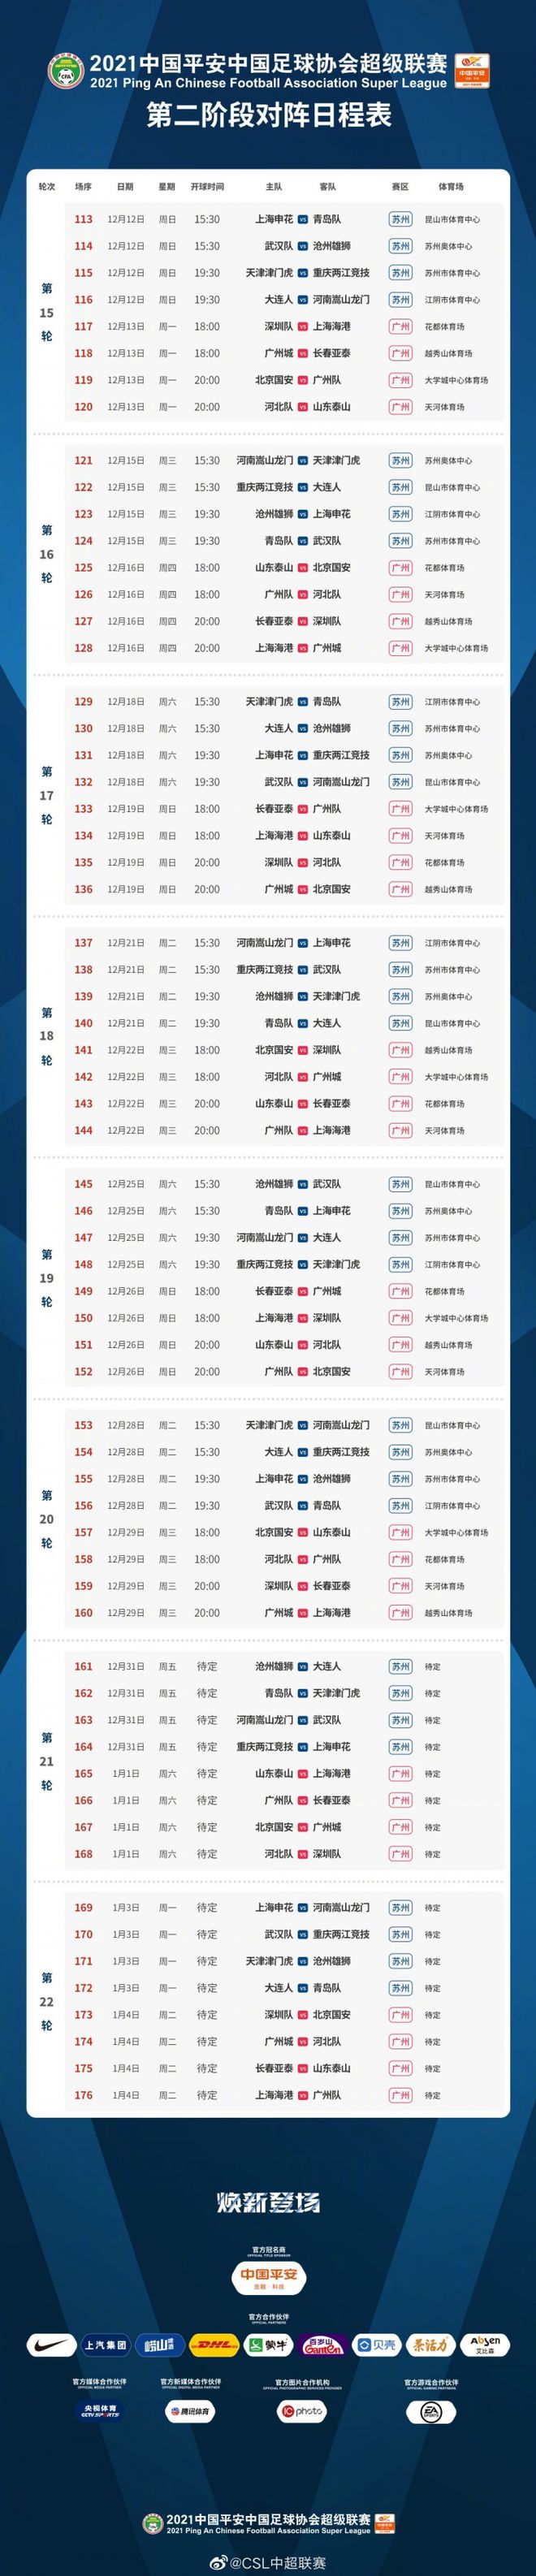 北京时间12月1日,中超公布2021联赛第二阶段的开赛时间,12月12日开踢